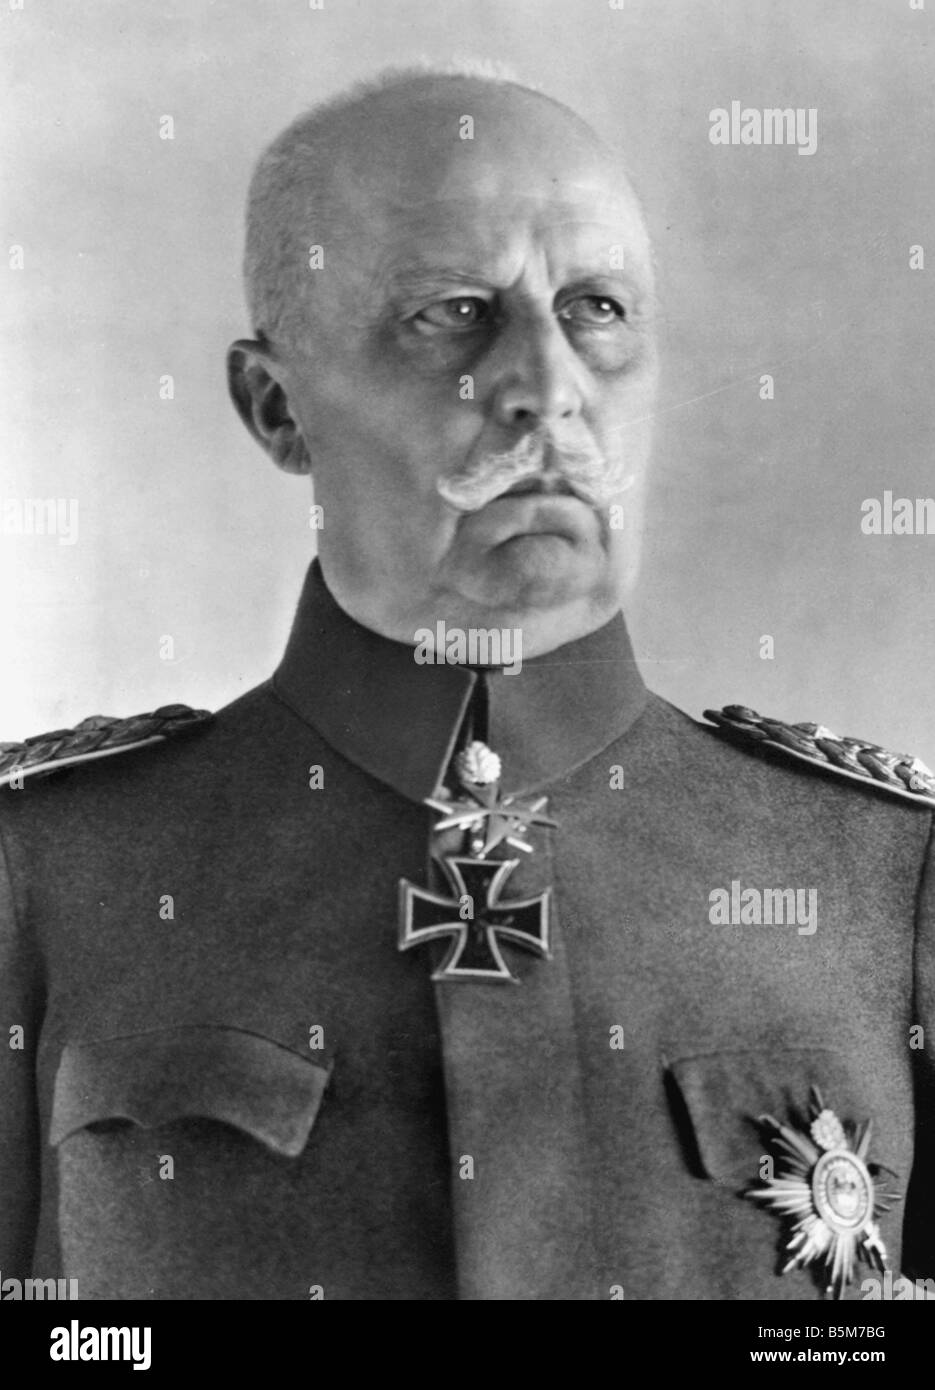 1 L67 B1930 1 Erich Ludendorff Foto C 1930 Ludendorff Erich preußischen General ab 1916 1. Generalquartiermeister bei der Suprem Stockfoto